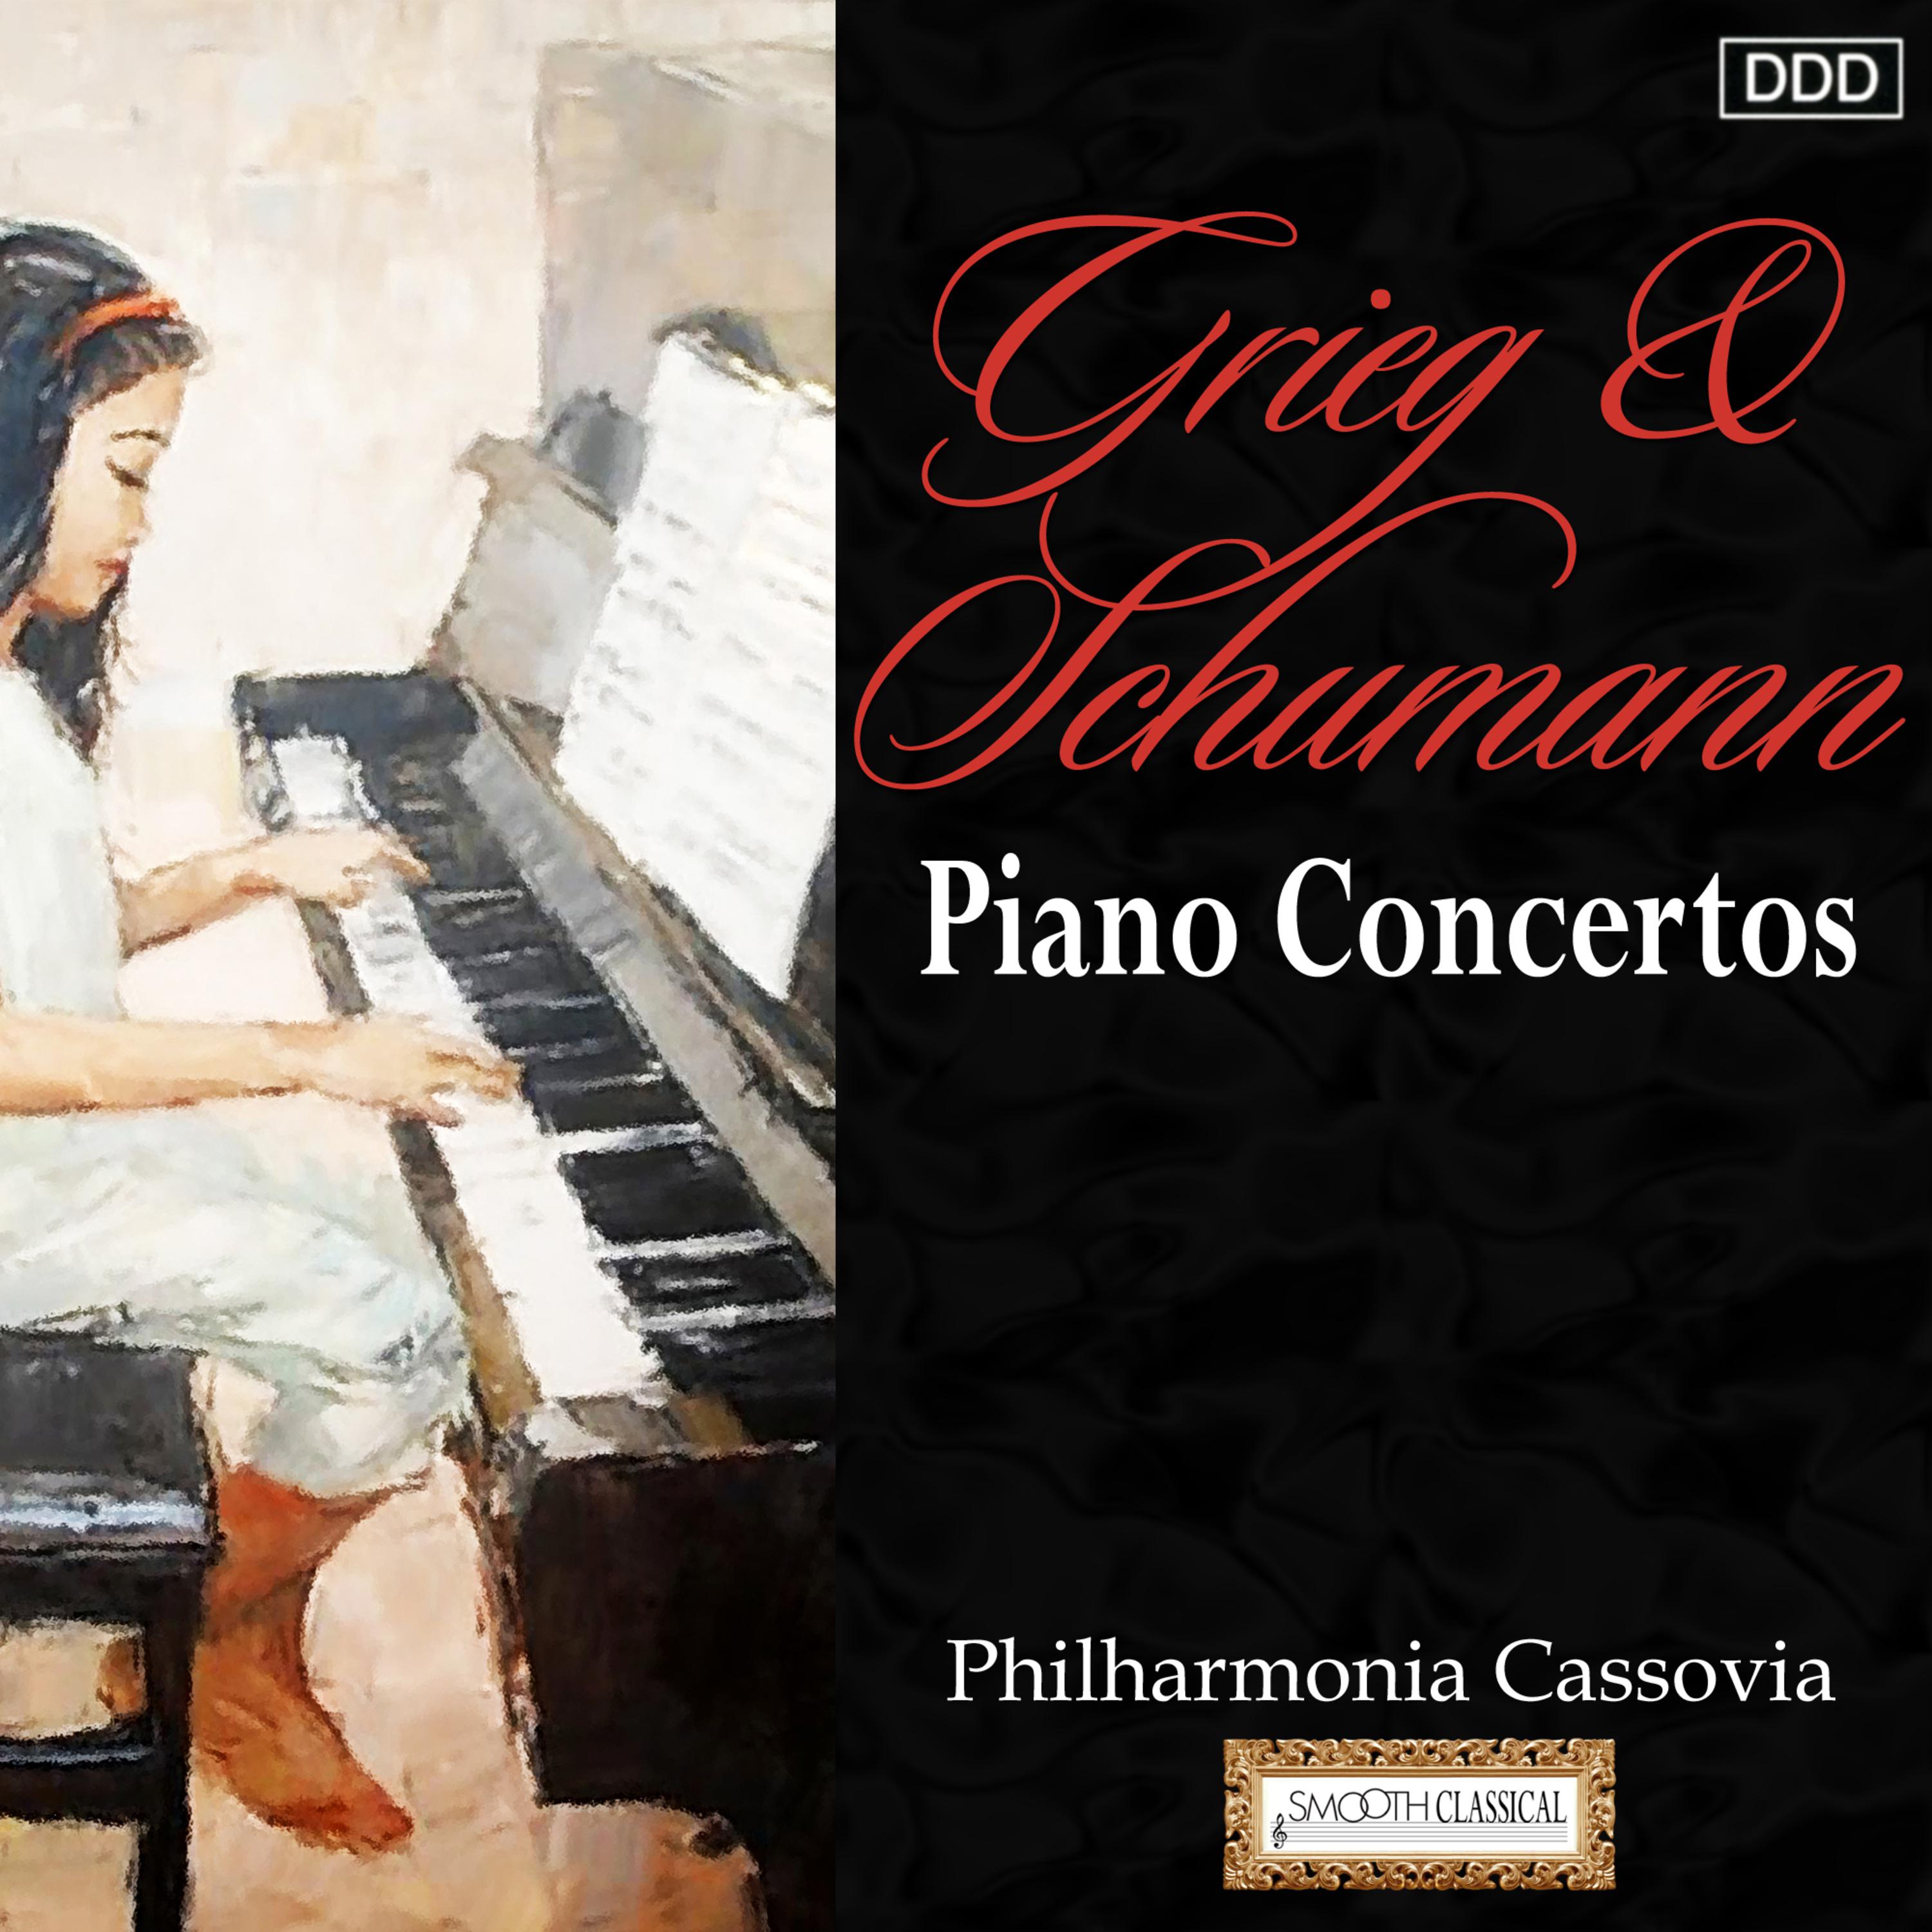 Piano Concerto in A Minor, Op. 54: I. Allegro affettuoso